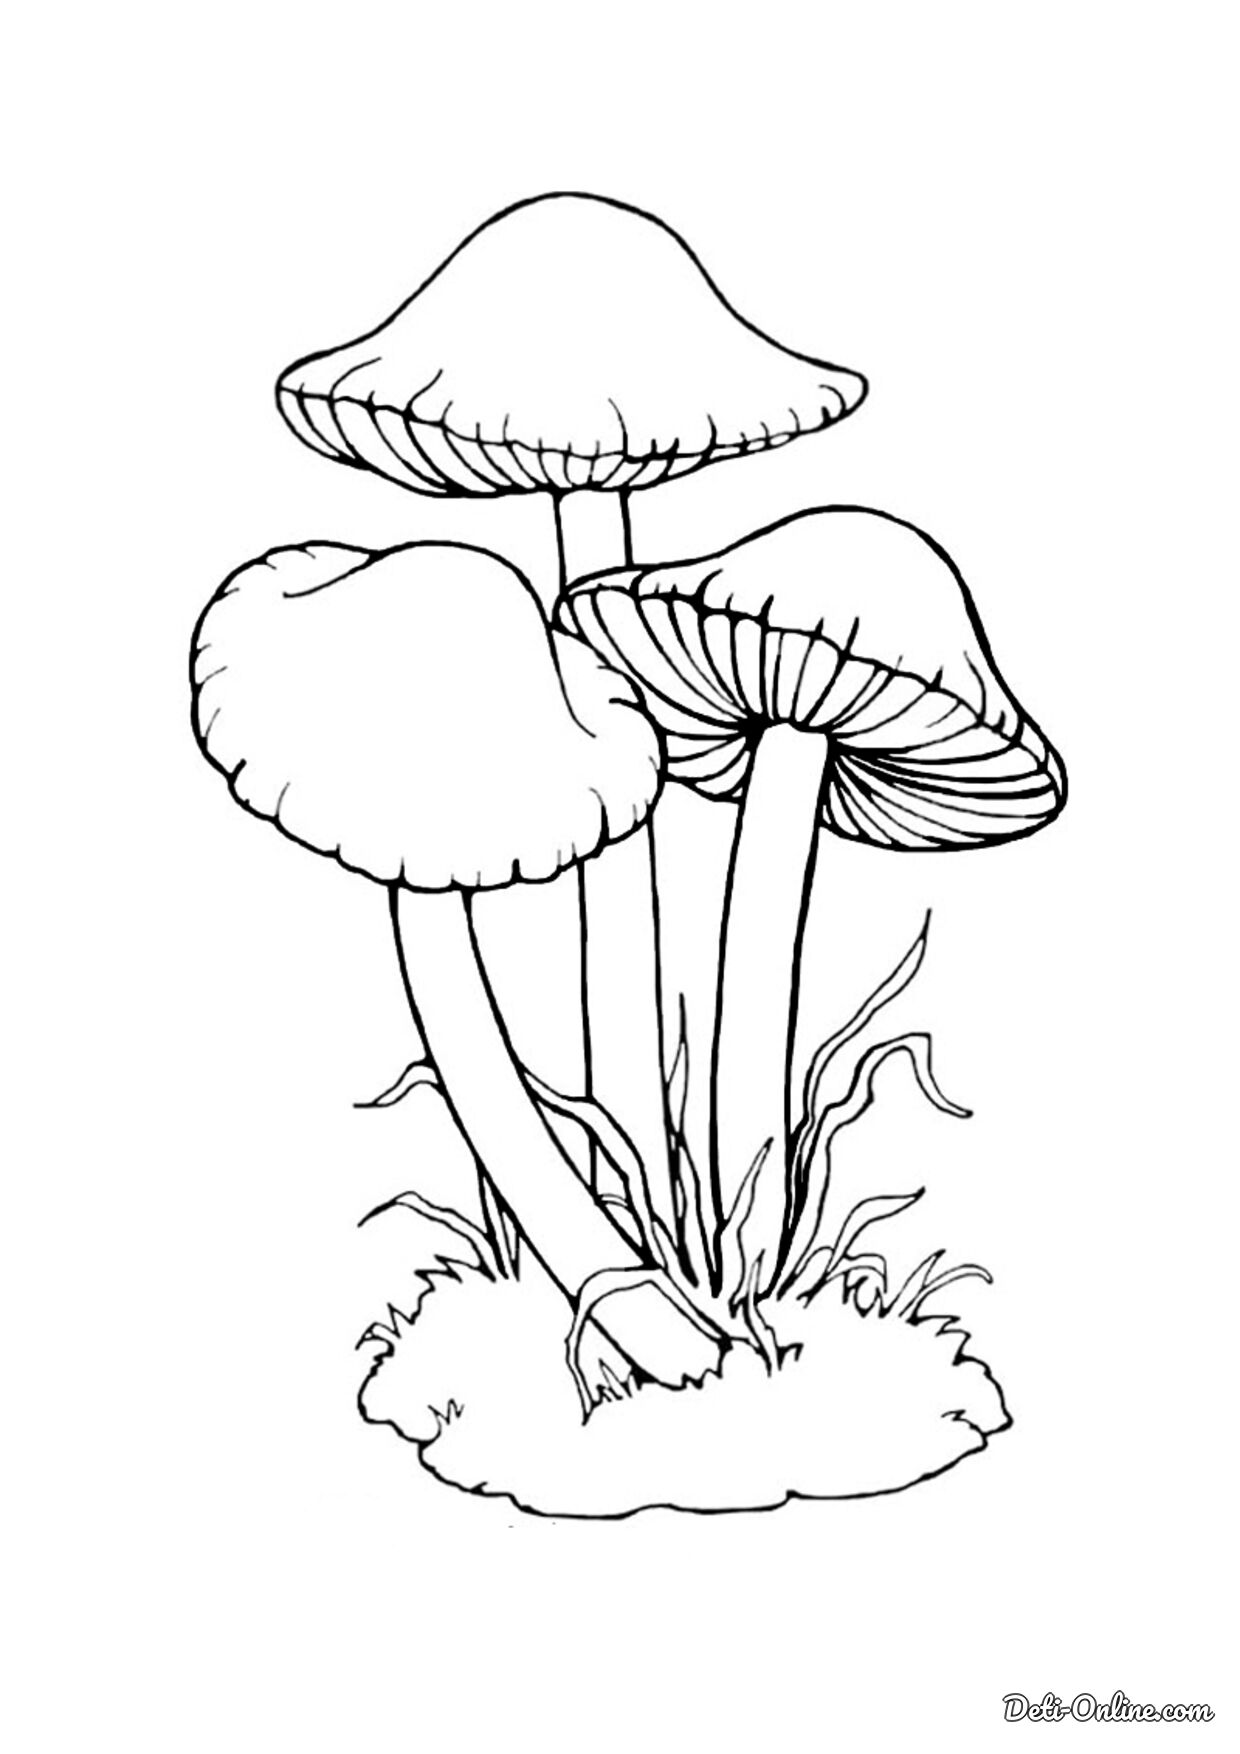 Раскраска Несъедобные грибы в летний период